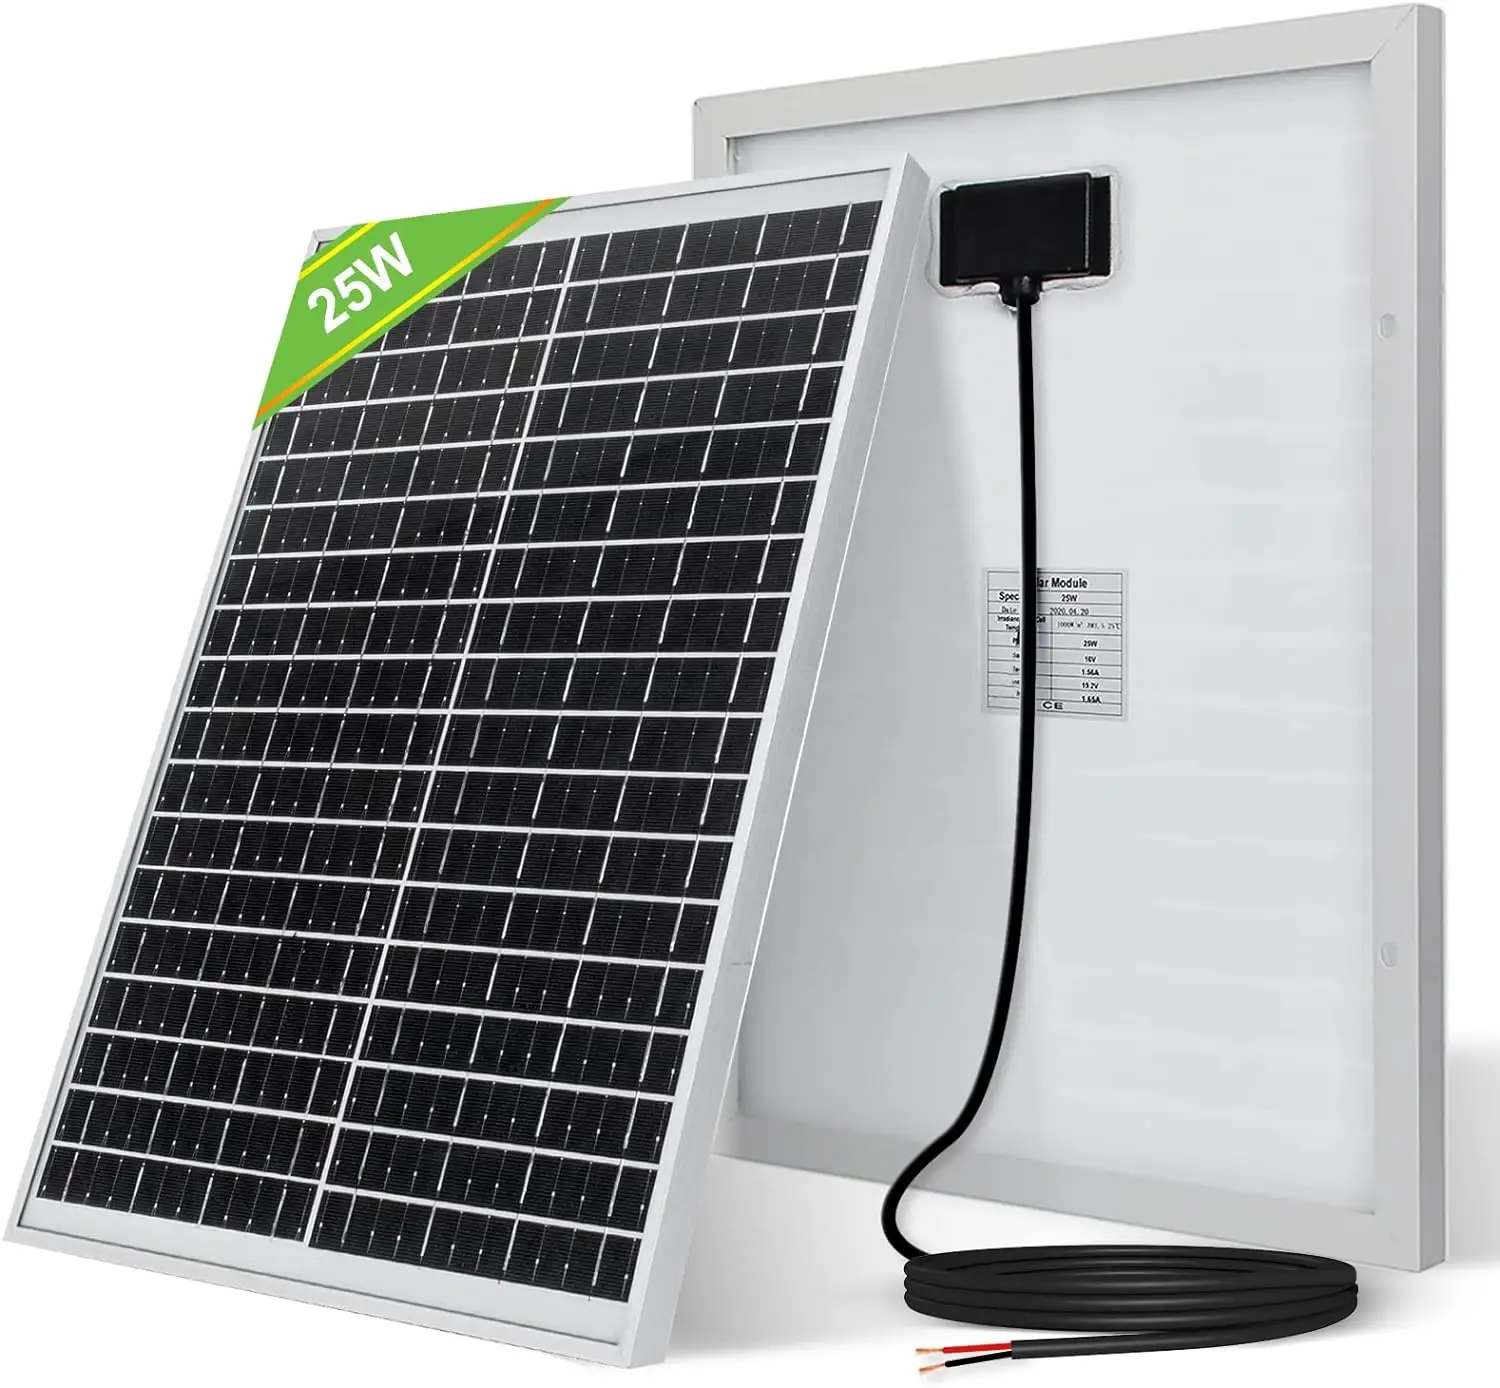 OEM sản xuất Mono panel năng lượng mặt trời 12V 24V Poly panel năng lượng mặt trời 5W 20W 30W 40W 50W 80W 100W 150W 200W 250W 300W kính tấm pin mặt trời